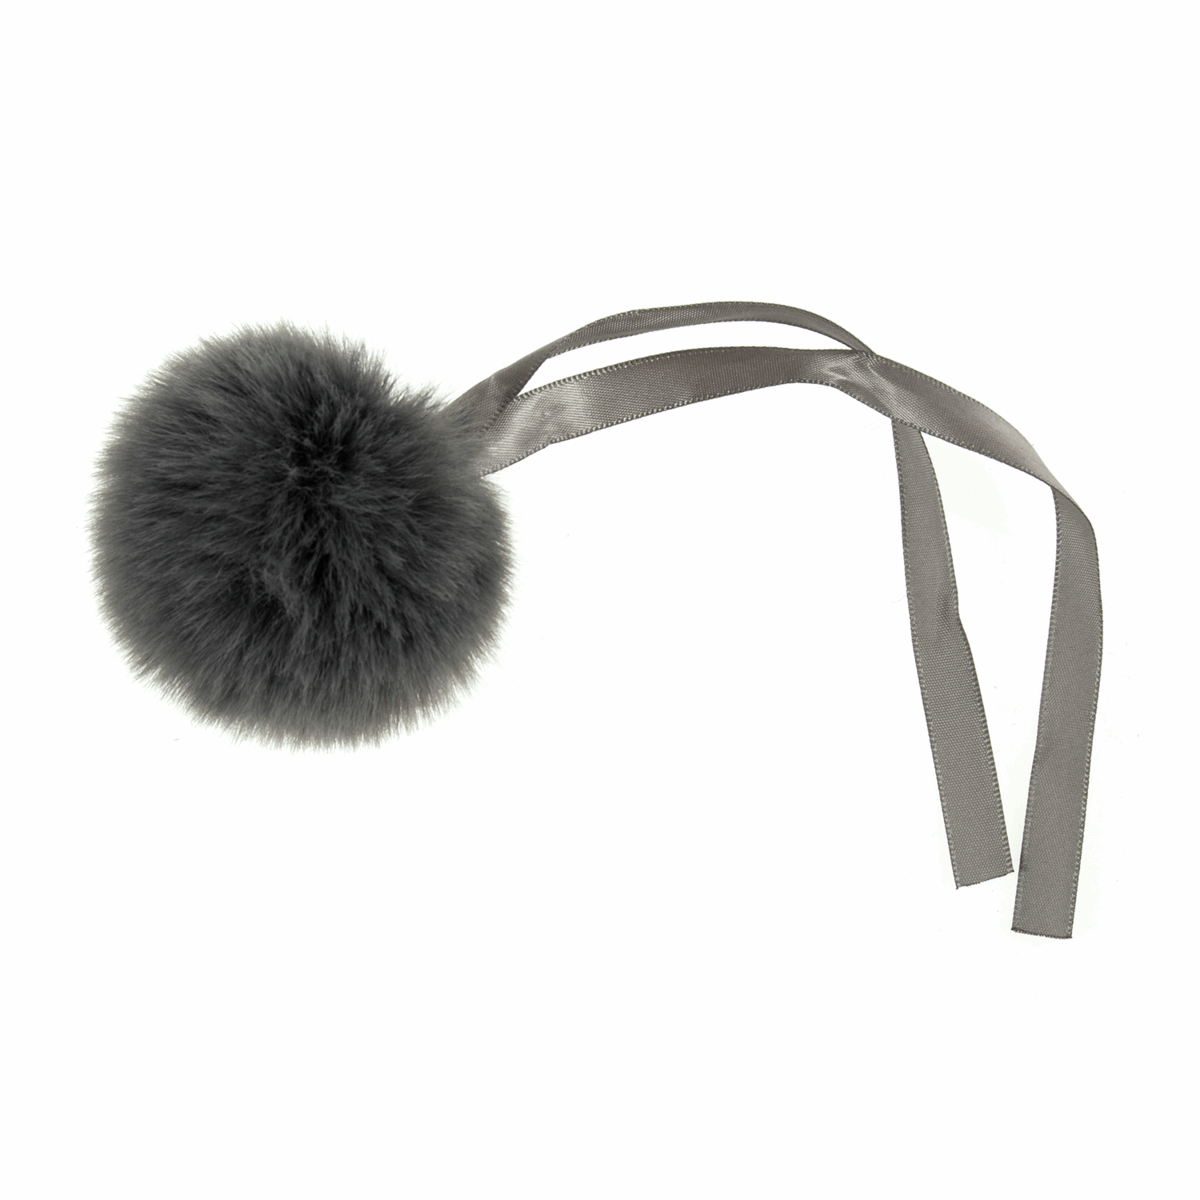 Trimits Faux Fur Super Fluffy Pom Pom - Grey 6cm (Medium)